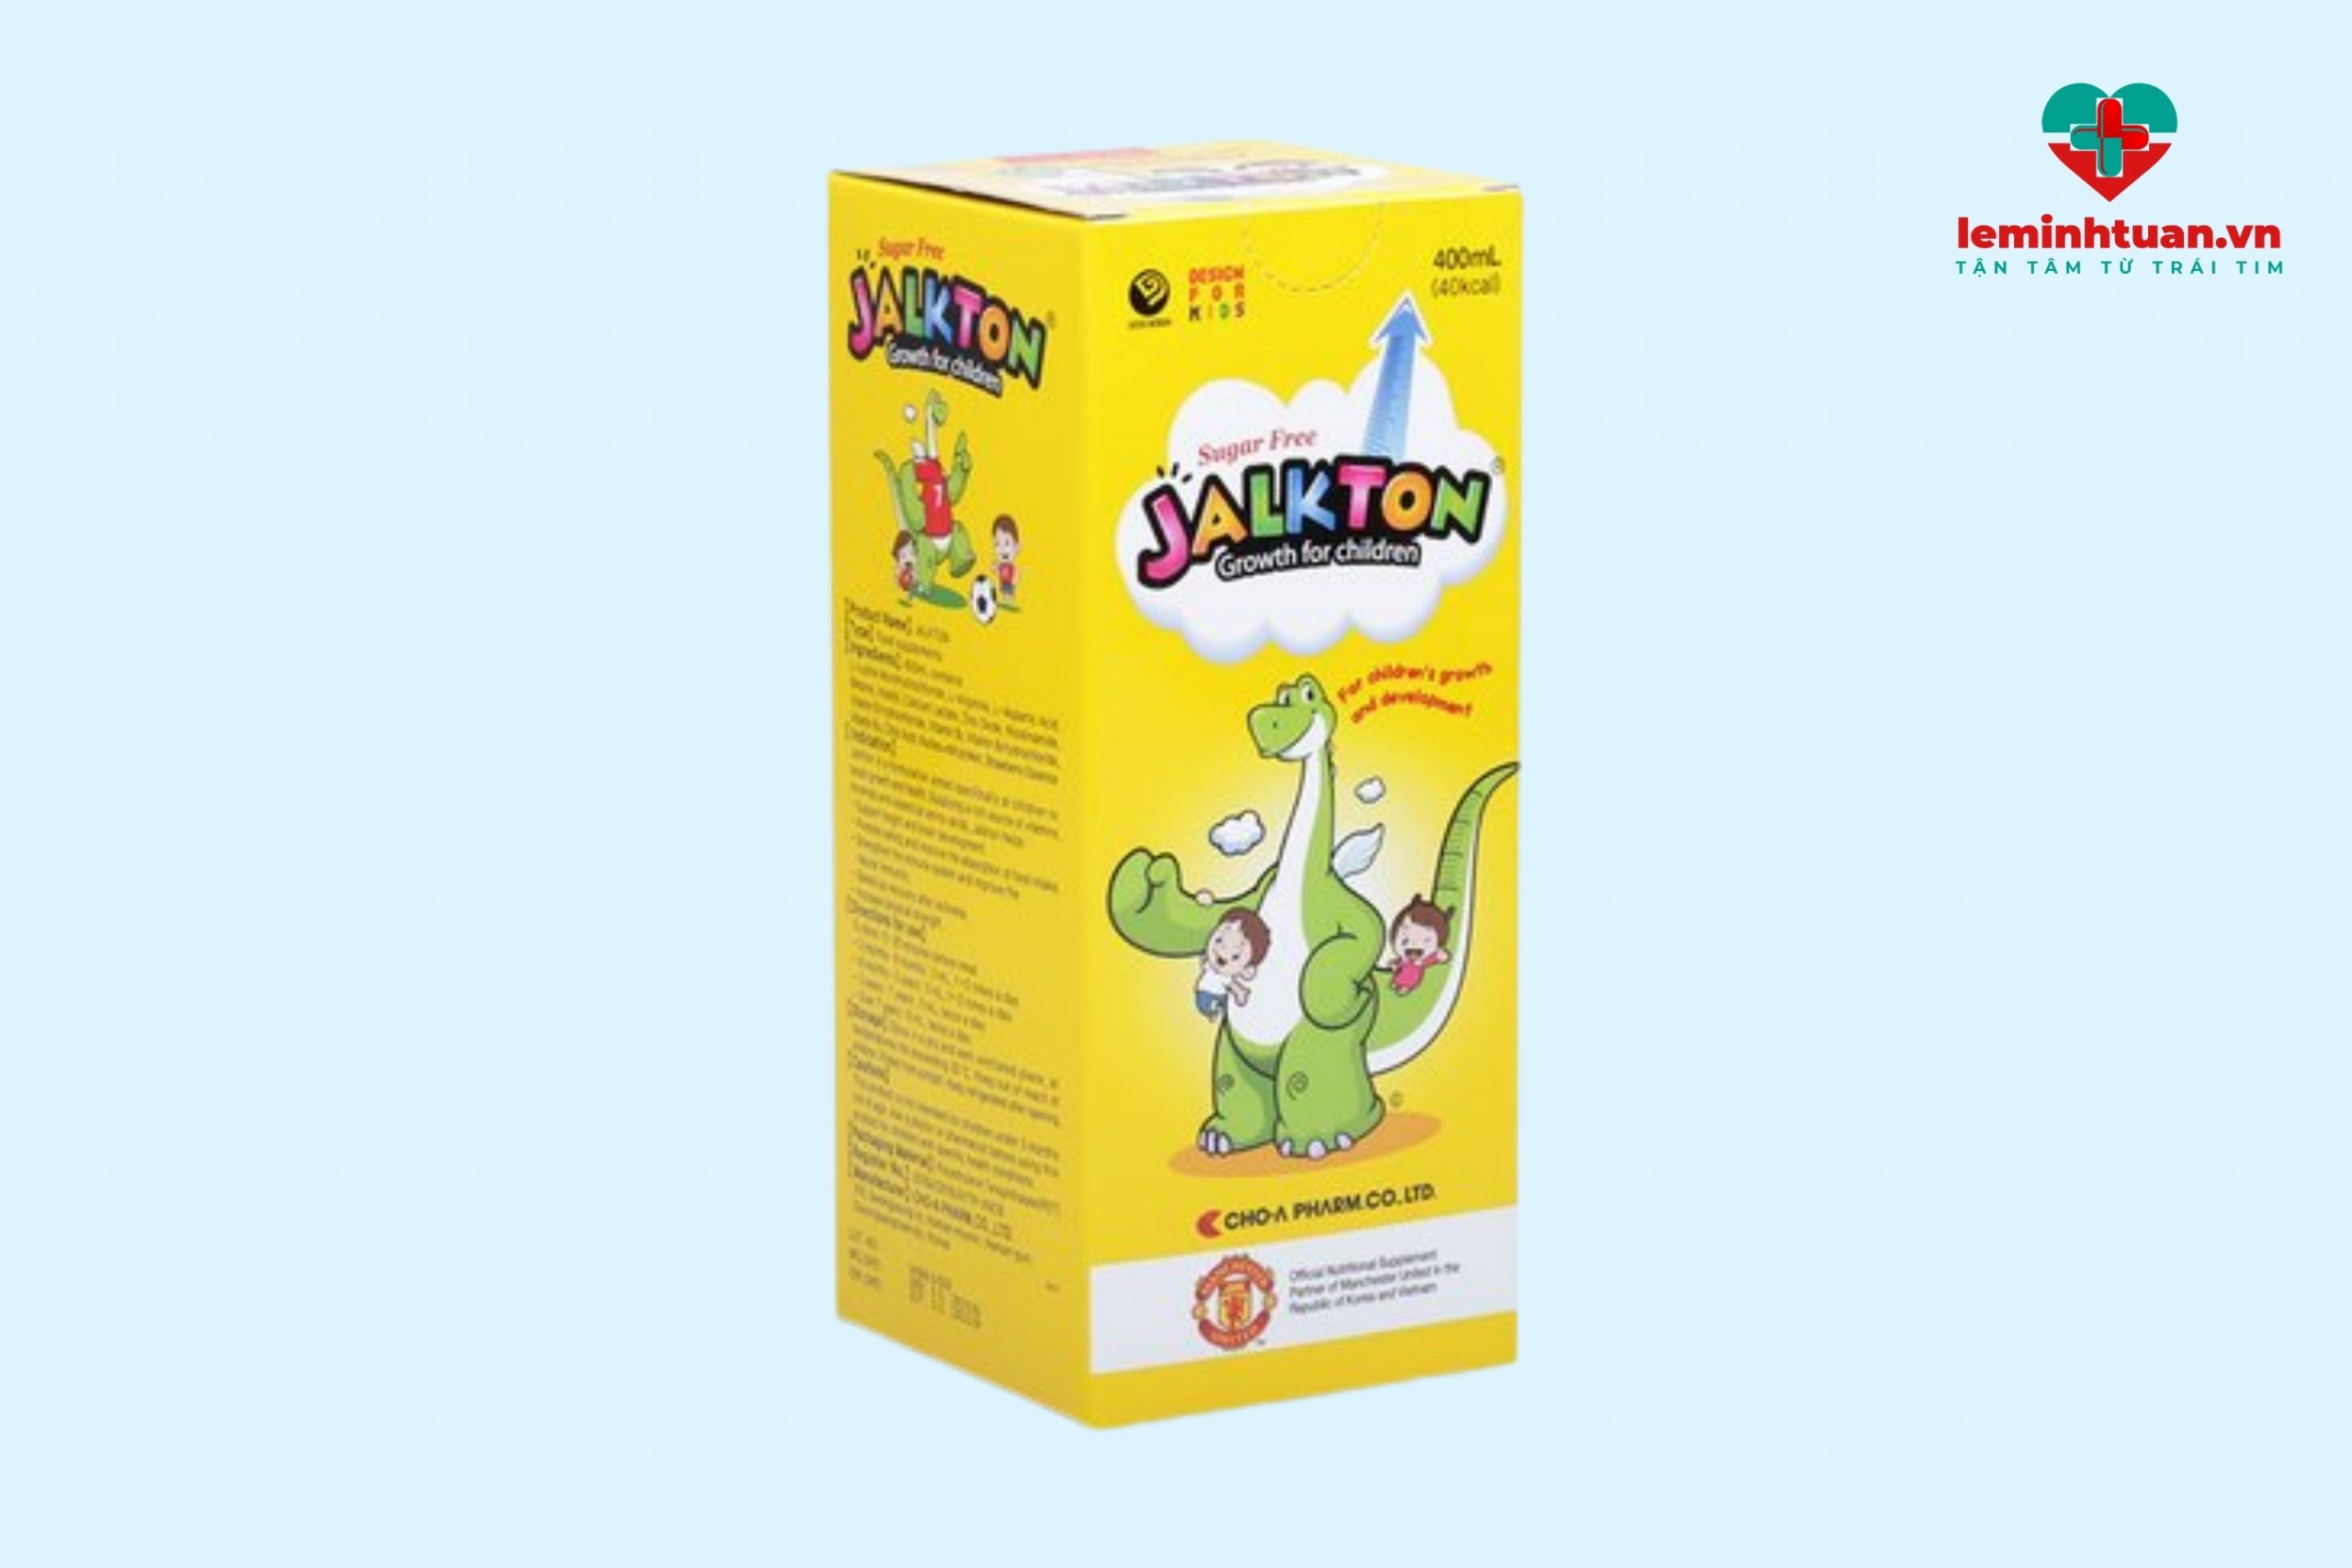 Siro uống cho bé Jalkton - sản phẩm nhập khẩu từ Hàn Quốc